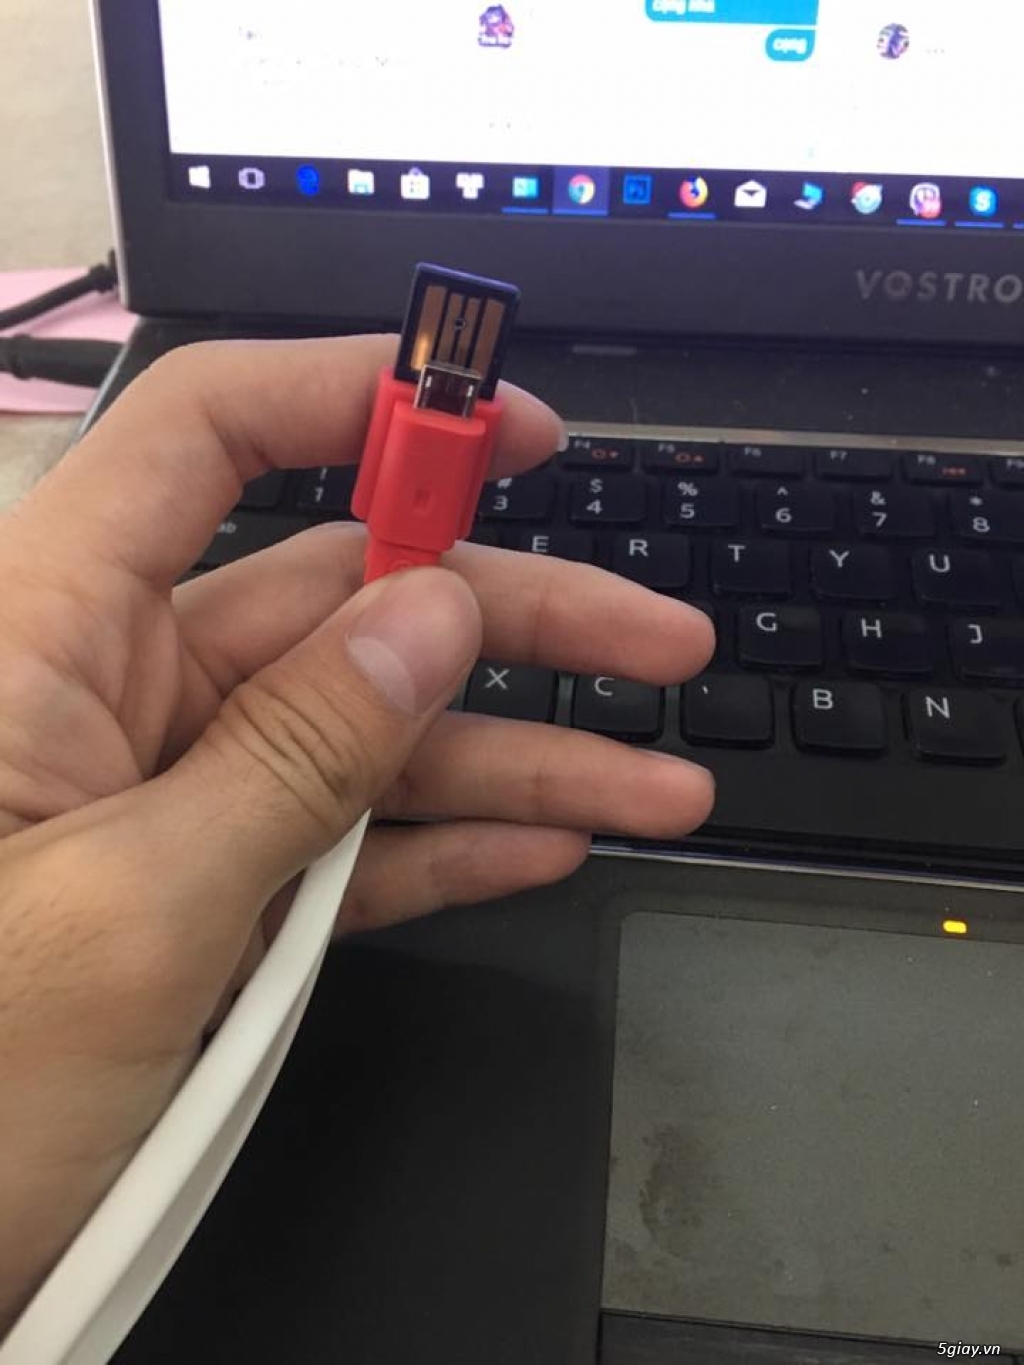 Cáp Micro USB - Thương hiệu hàn quốc